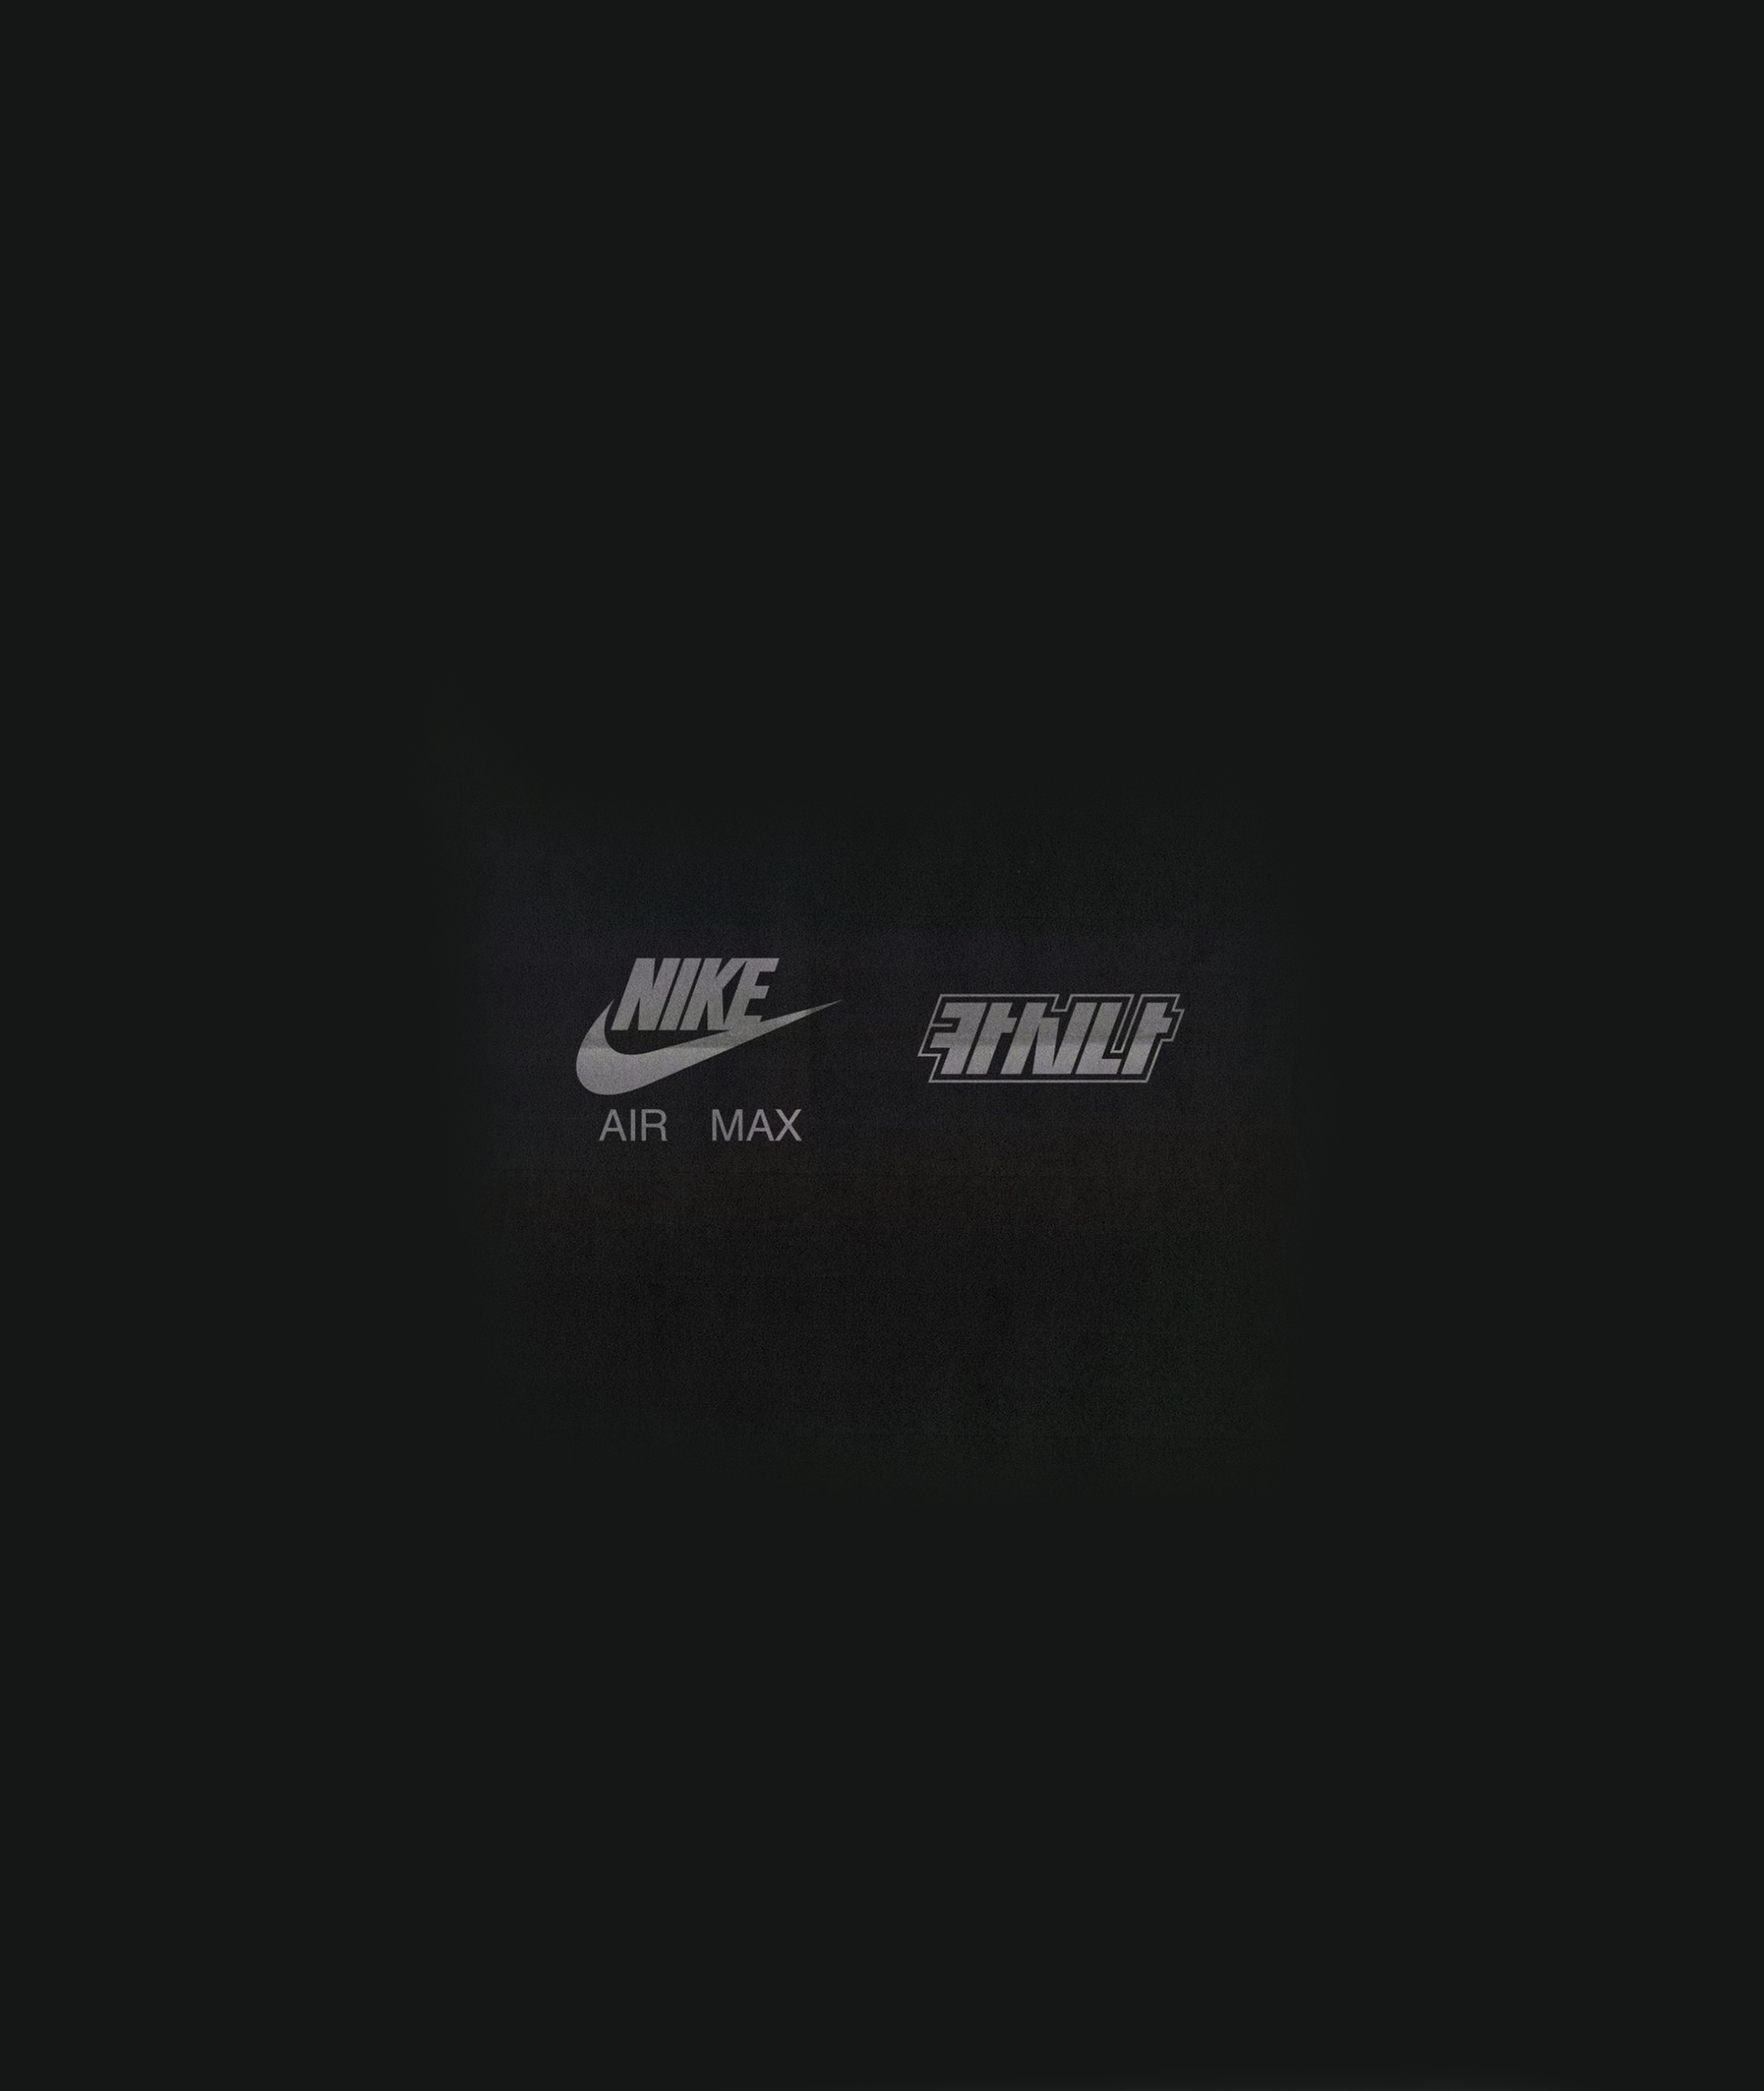 A Closer Look At The Kasina x Nike Air Max 1 — Kick Game